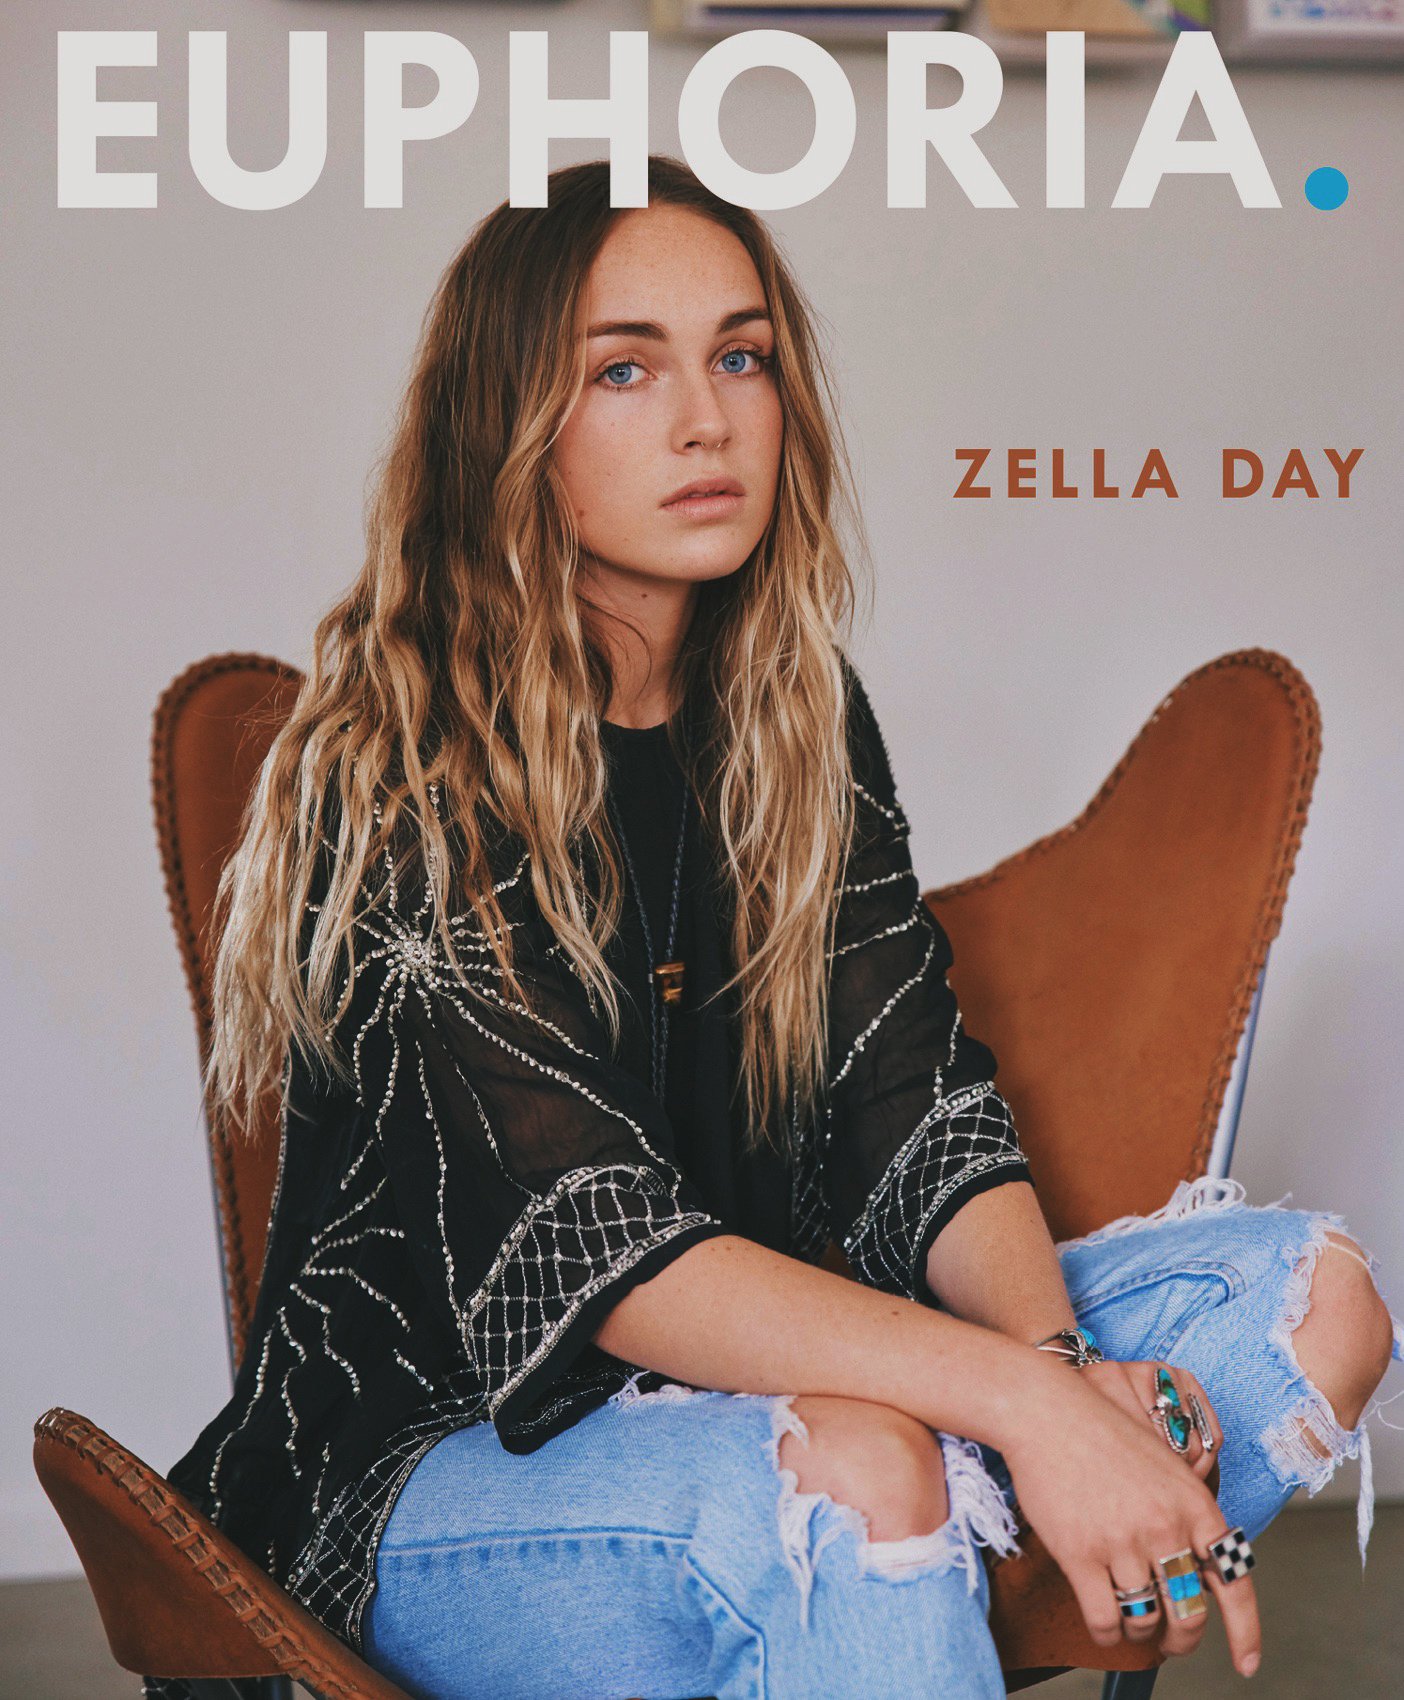 Zella Day | EUPHORIA. 